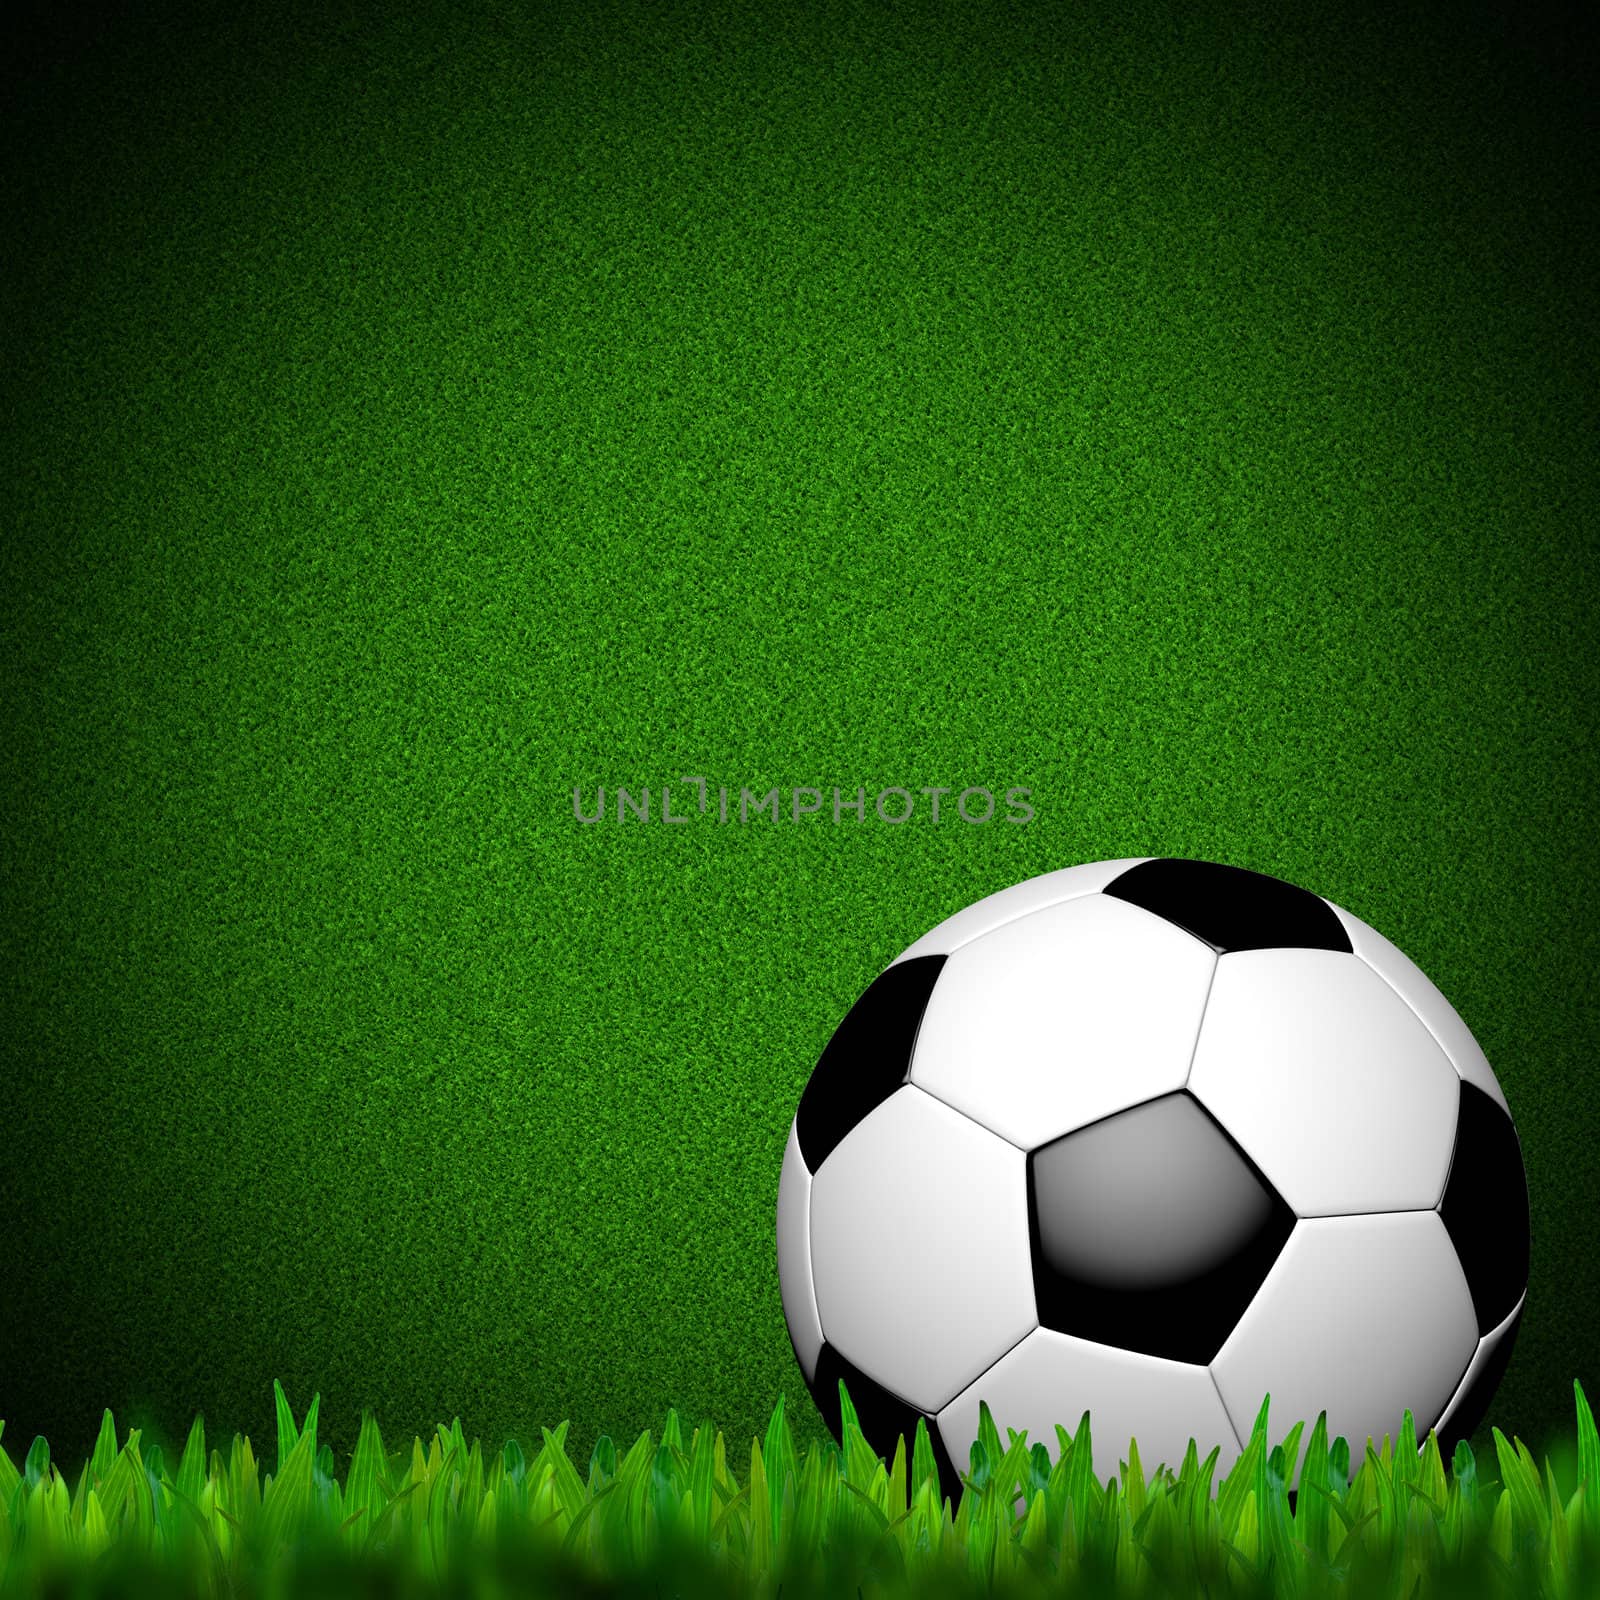 Football ( soccer ball ) in green grass